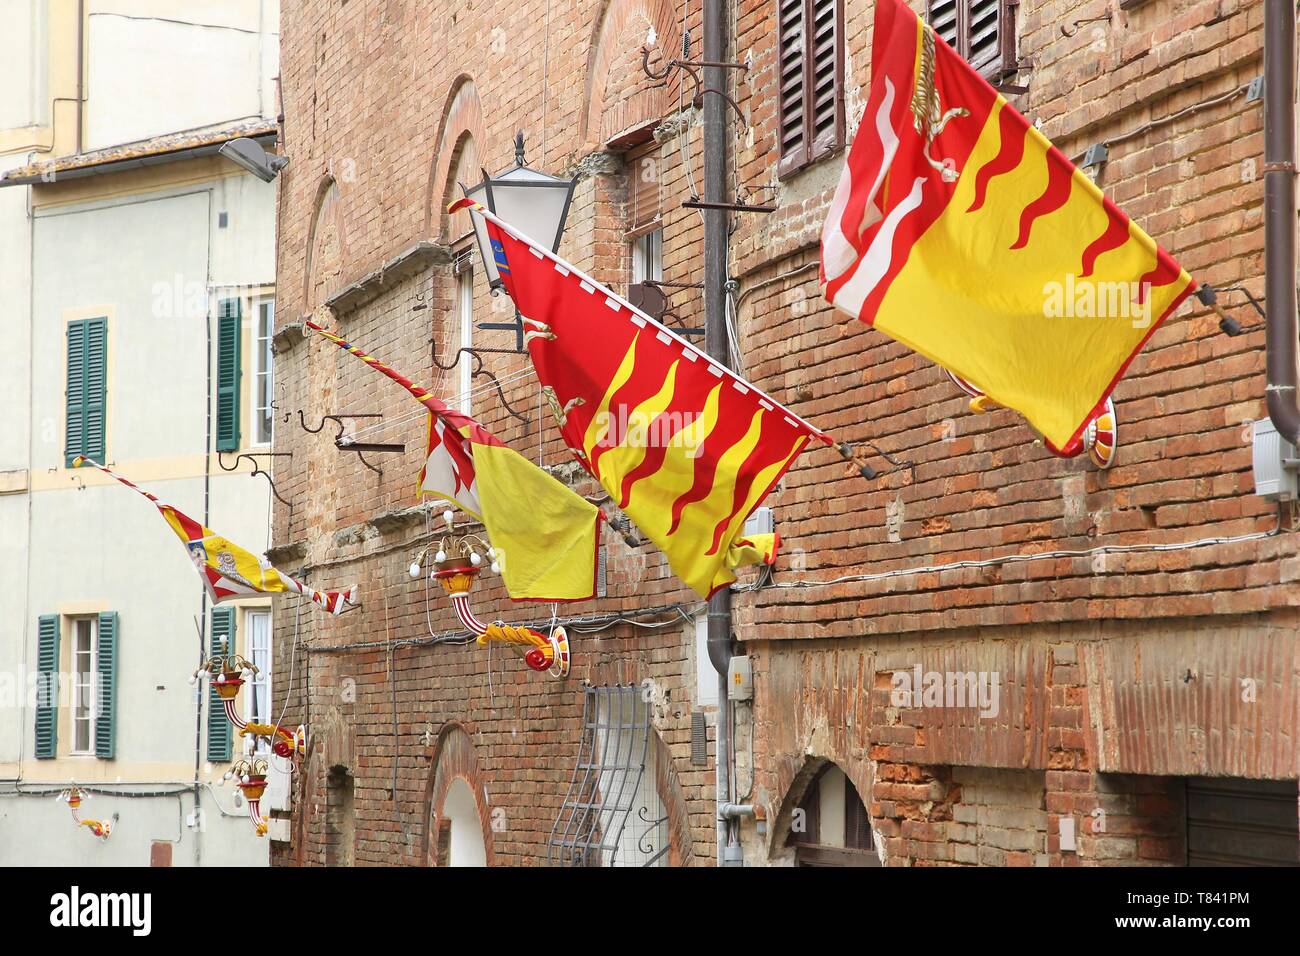 Siena, Italien. Die Altstadt ist in traditionellen Bezirke (Contrade) mit unterschiedlichen Fahnen und Farben aufgeteilt. Valdimontone (Tal der Ram). Stockfoto